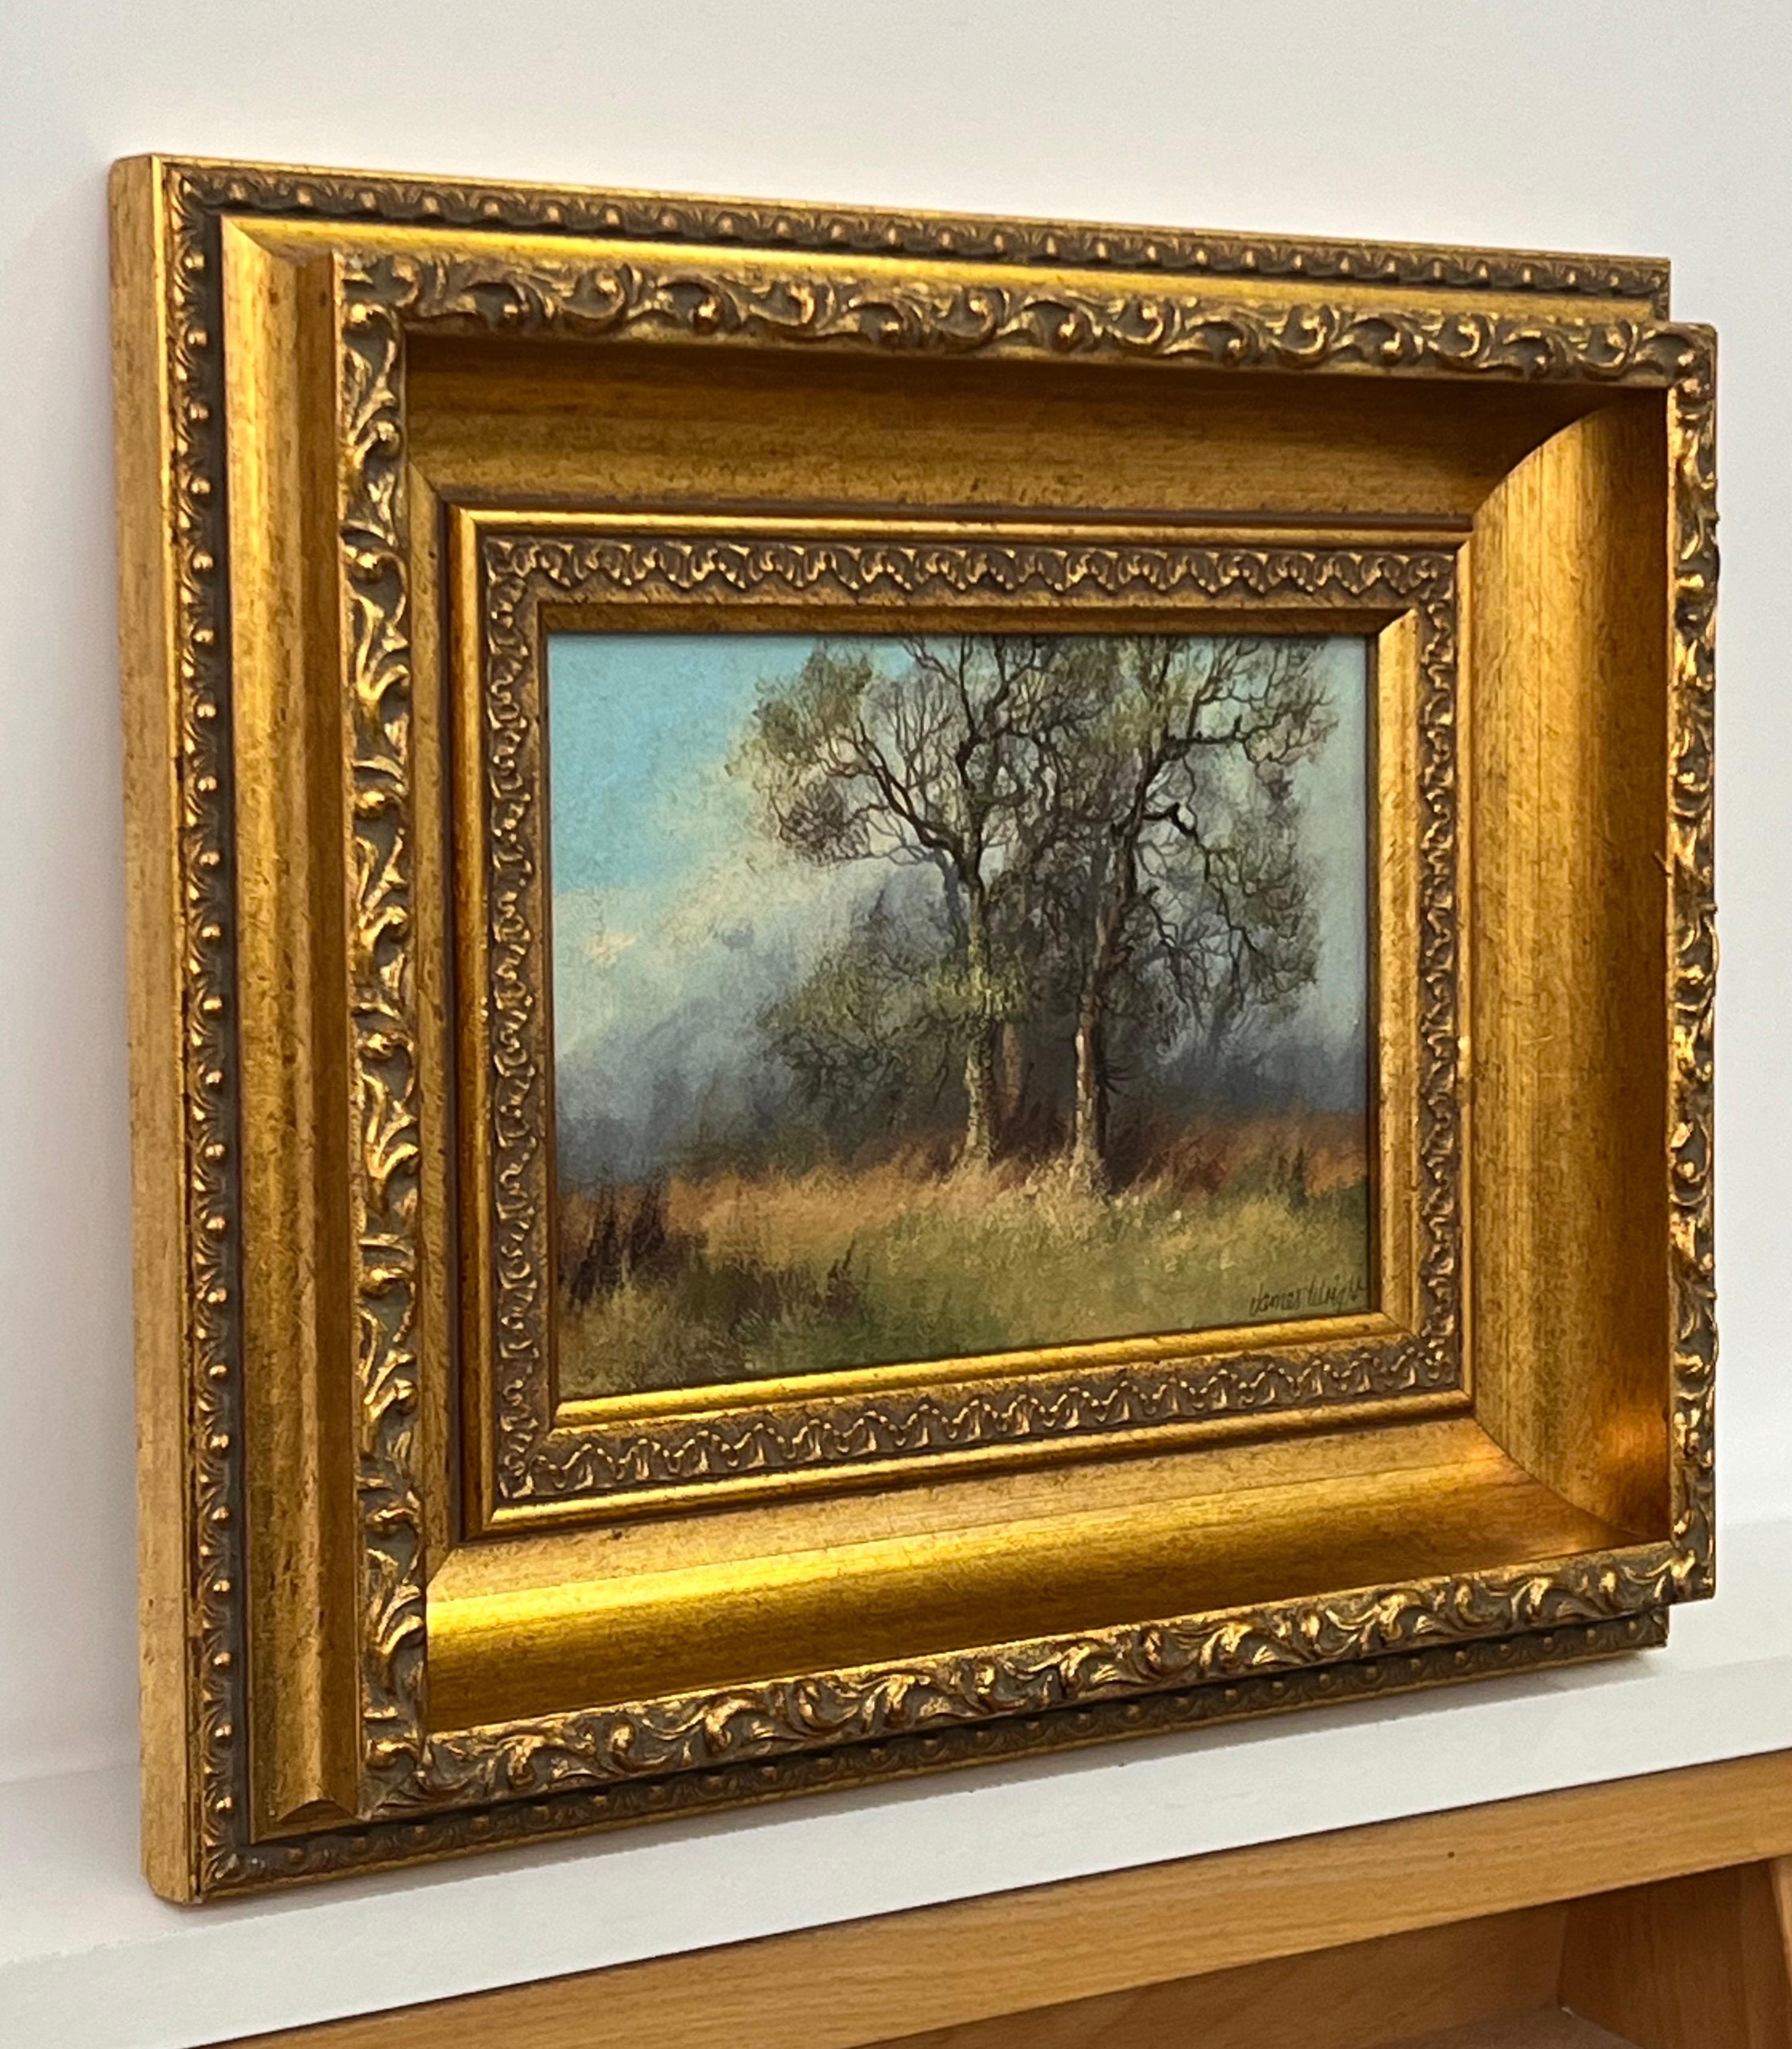 Étude des arbres et des champs dans la campagne anglaise par un artiste paysagiste du 20e siècle - Painting de James Wright